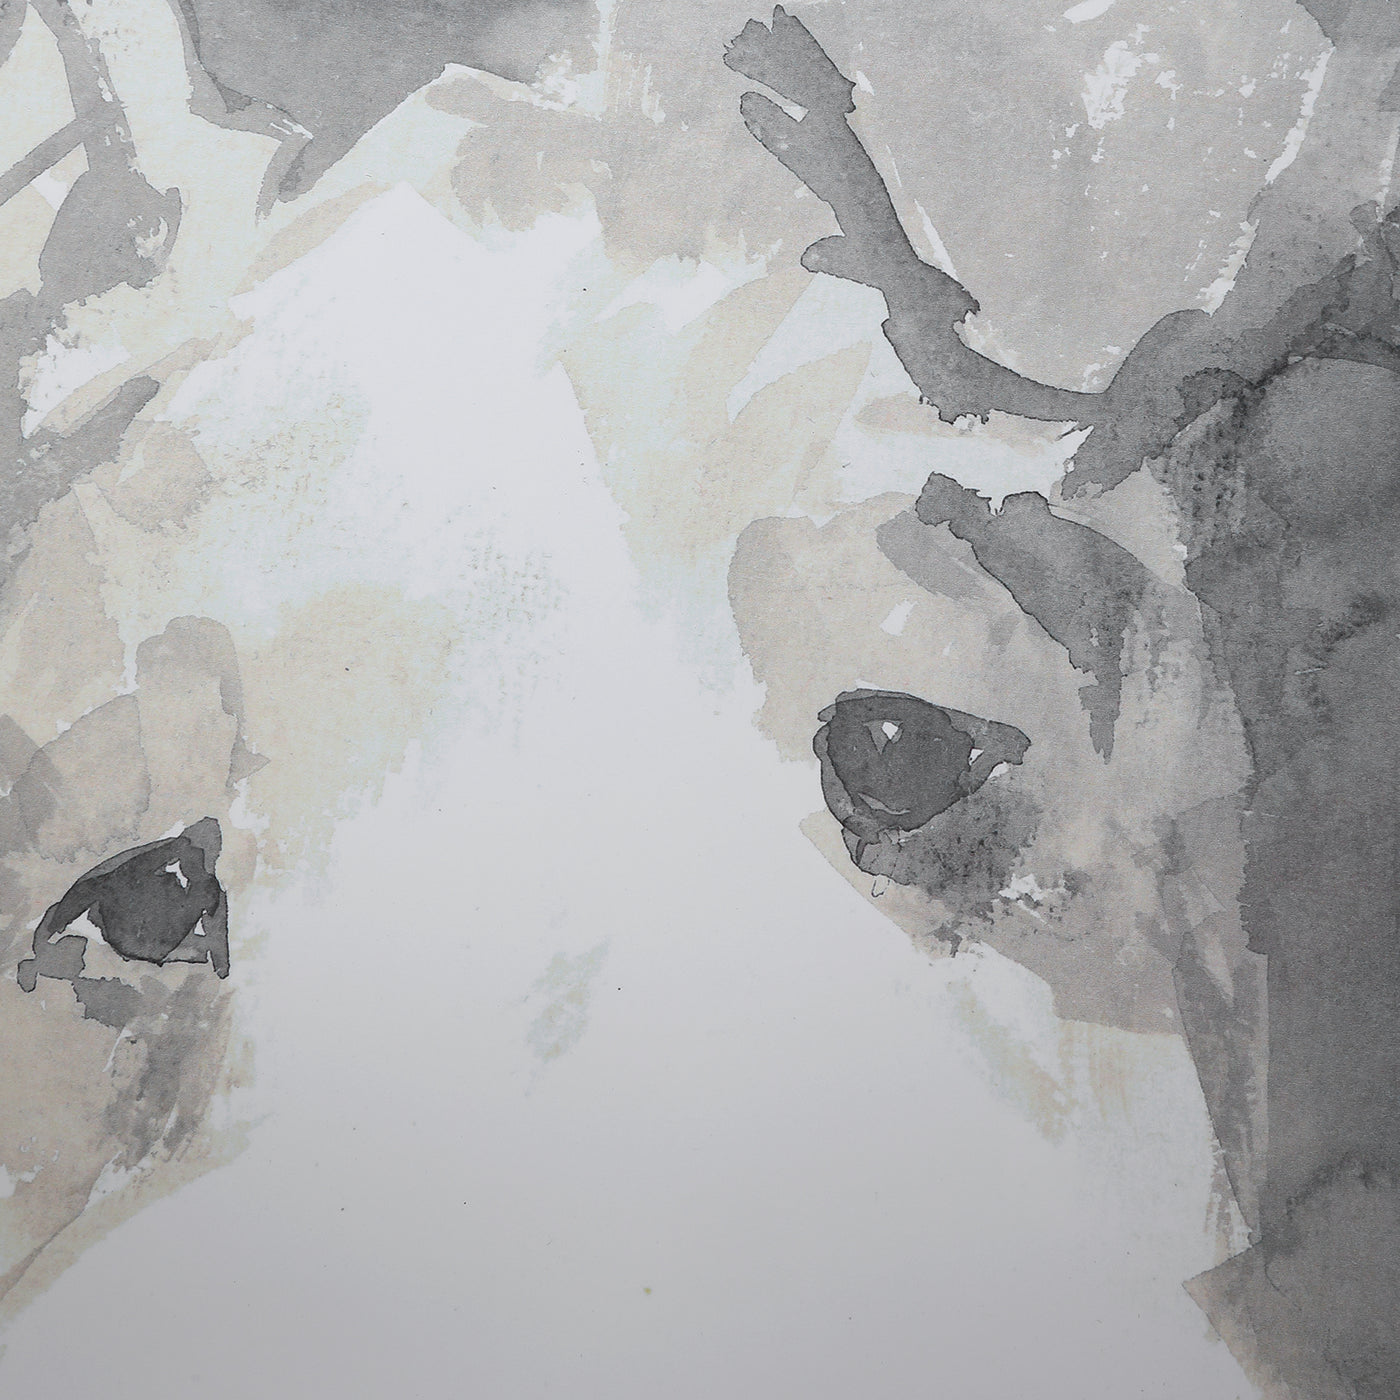 Uttermost Modern Dogs Framed Prints, S/4